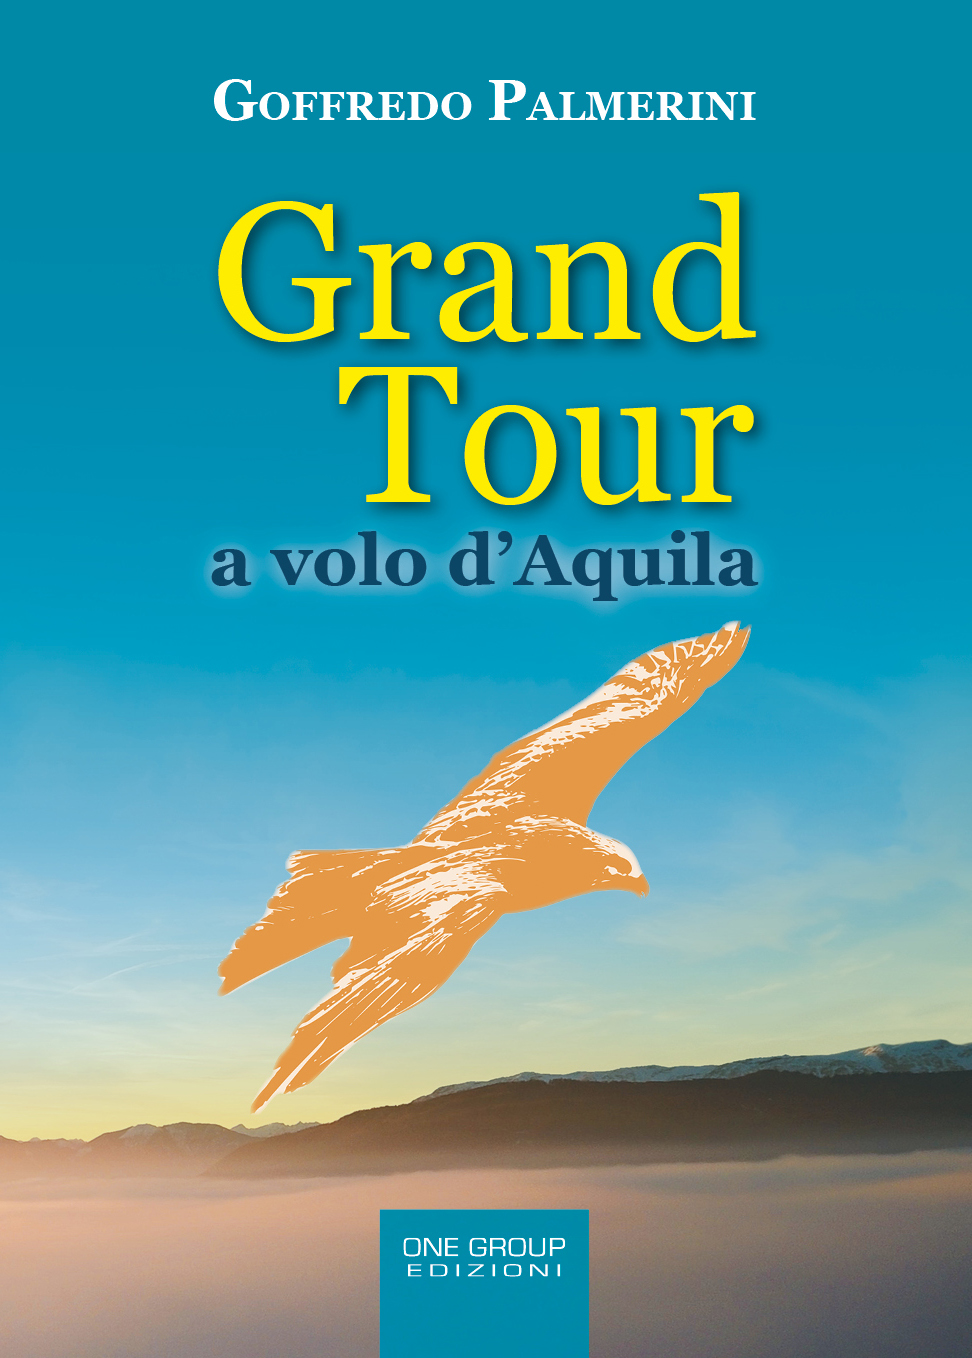 La copertina del libro di Palmerini "Gran Tour a volo d'Aquila"